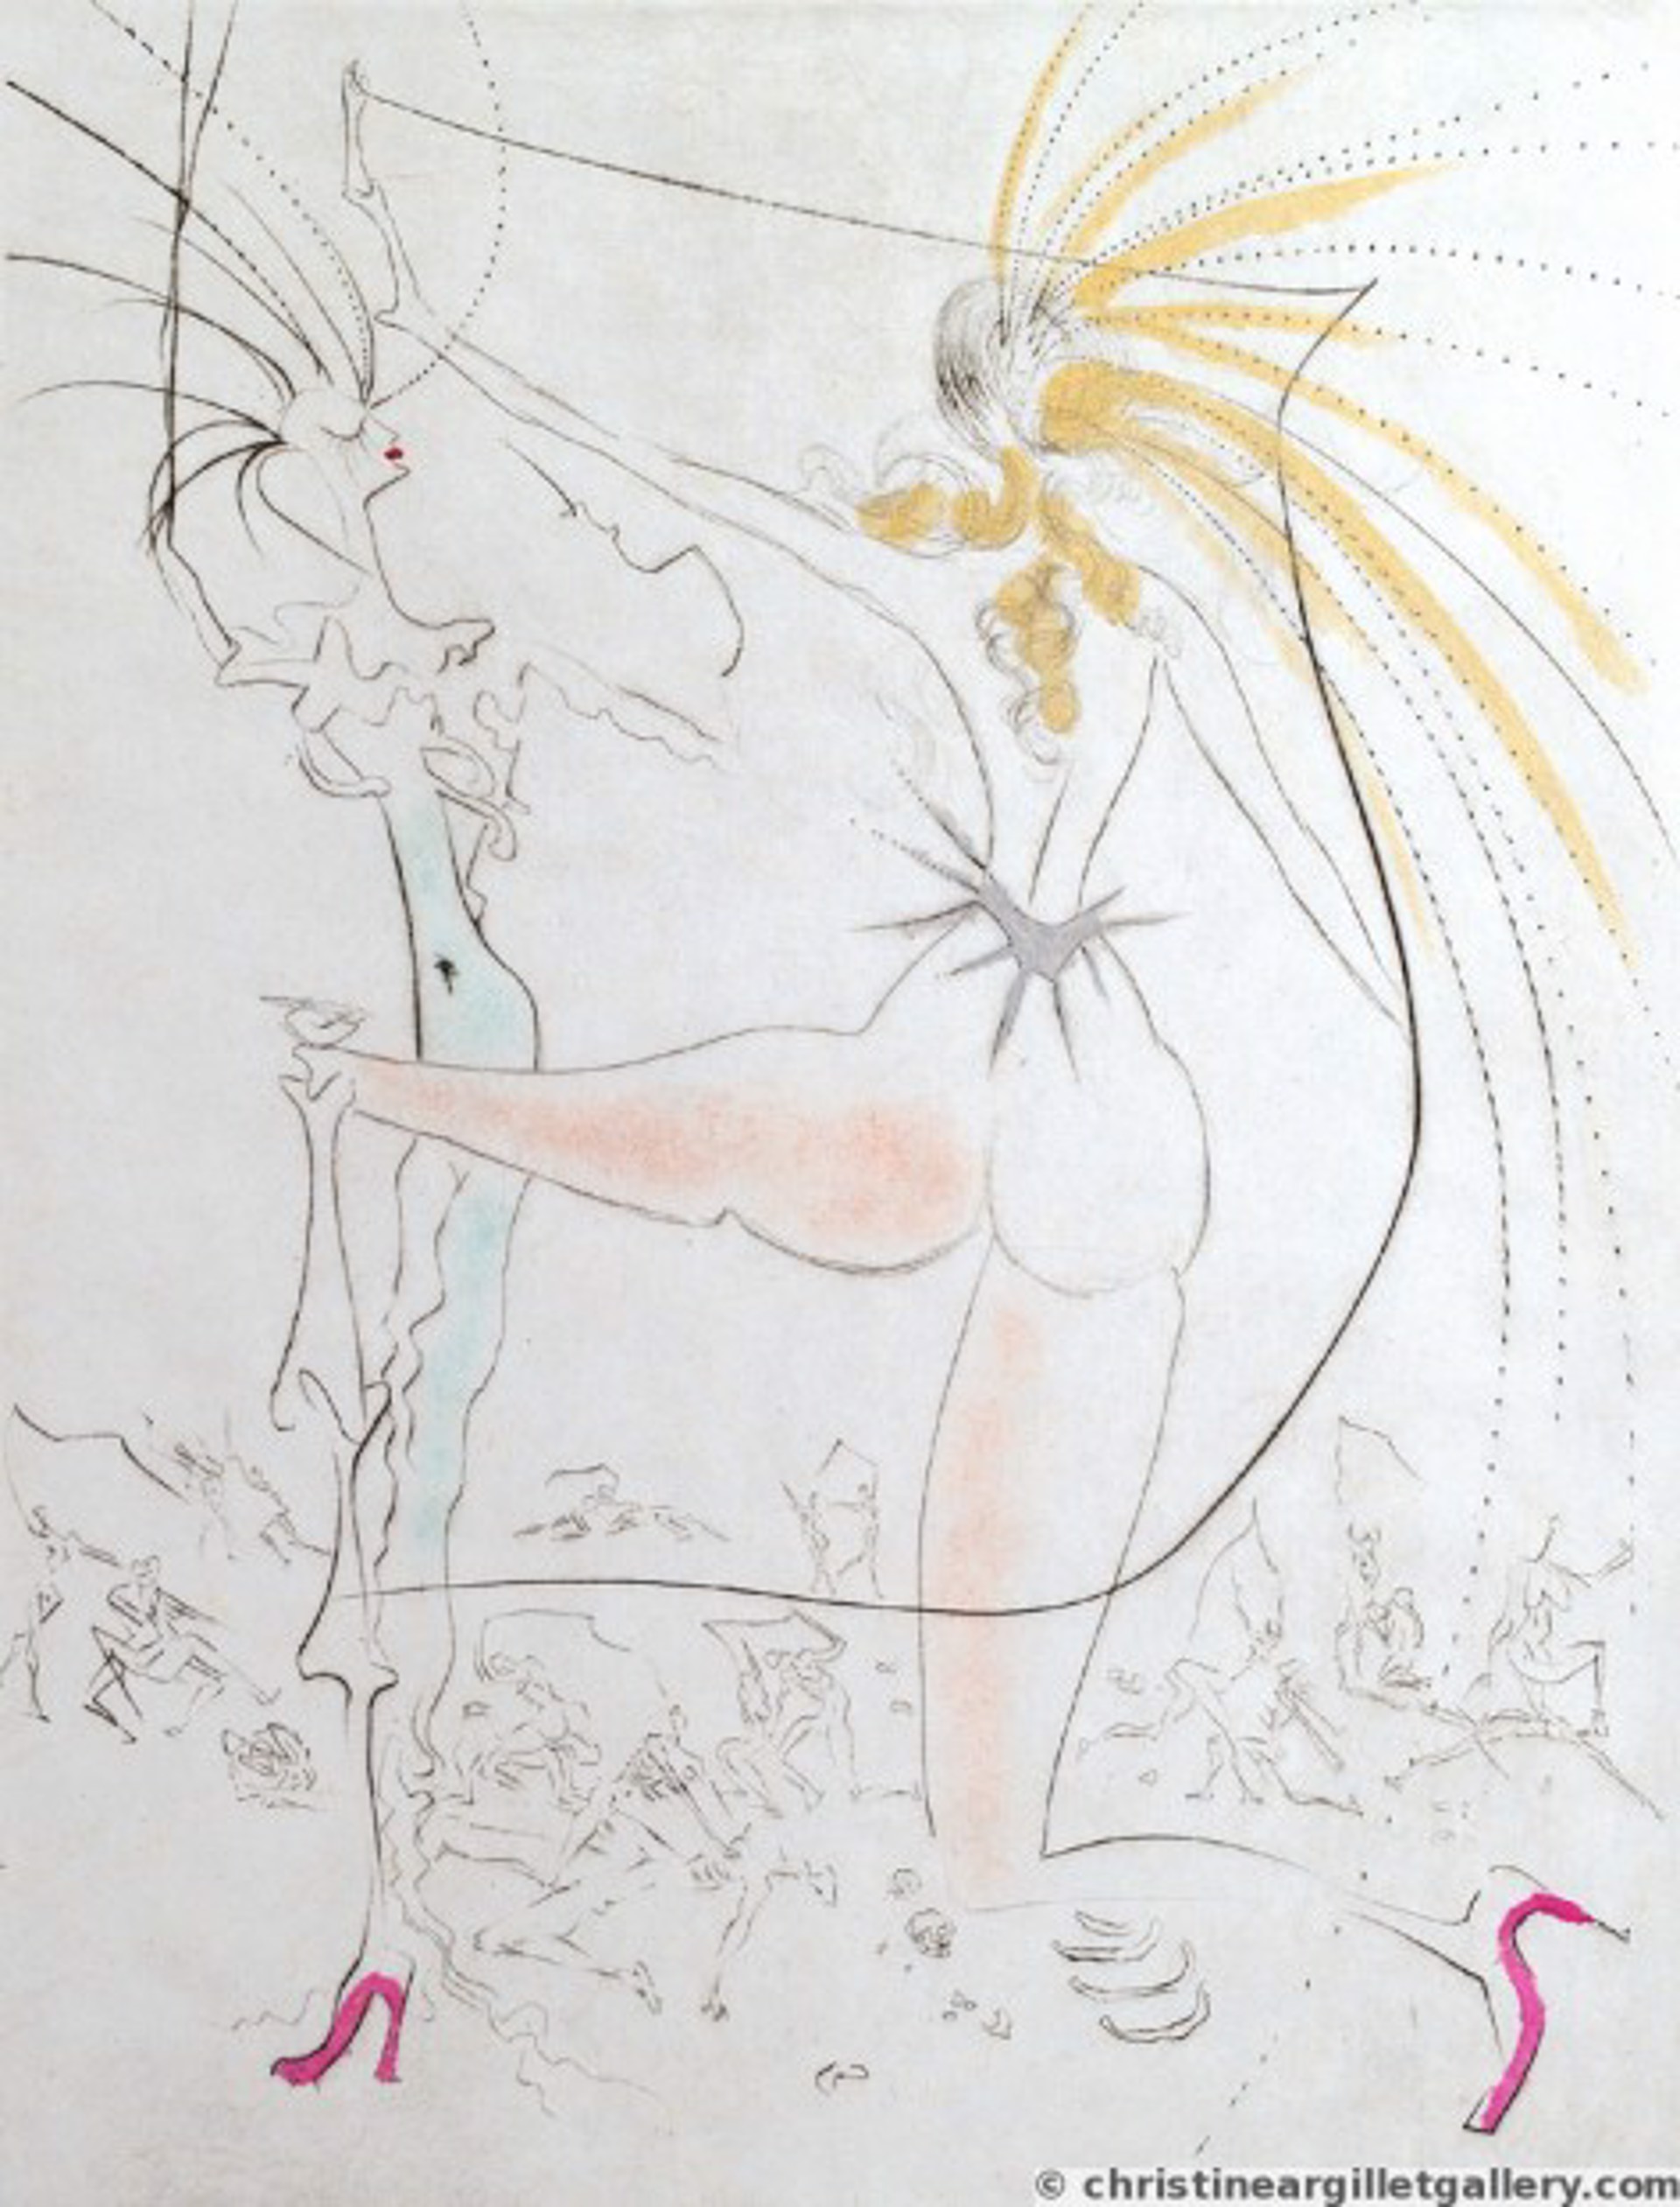 Venus in Furs "Egrets" by Salvador Dali